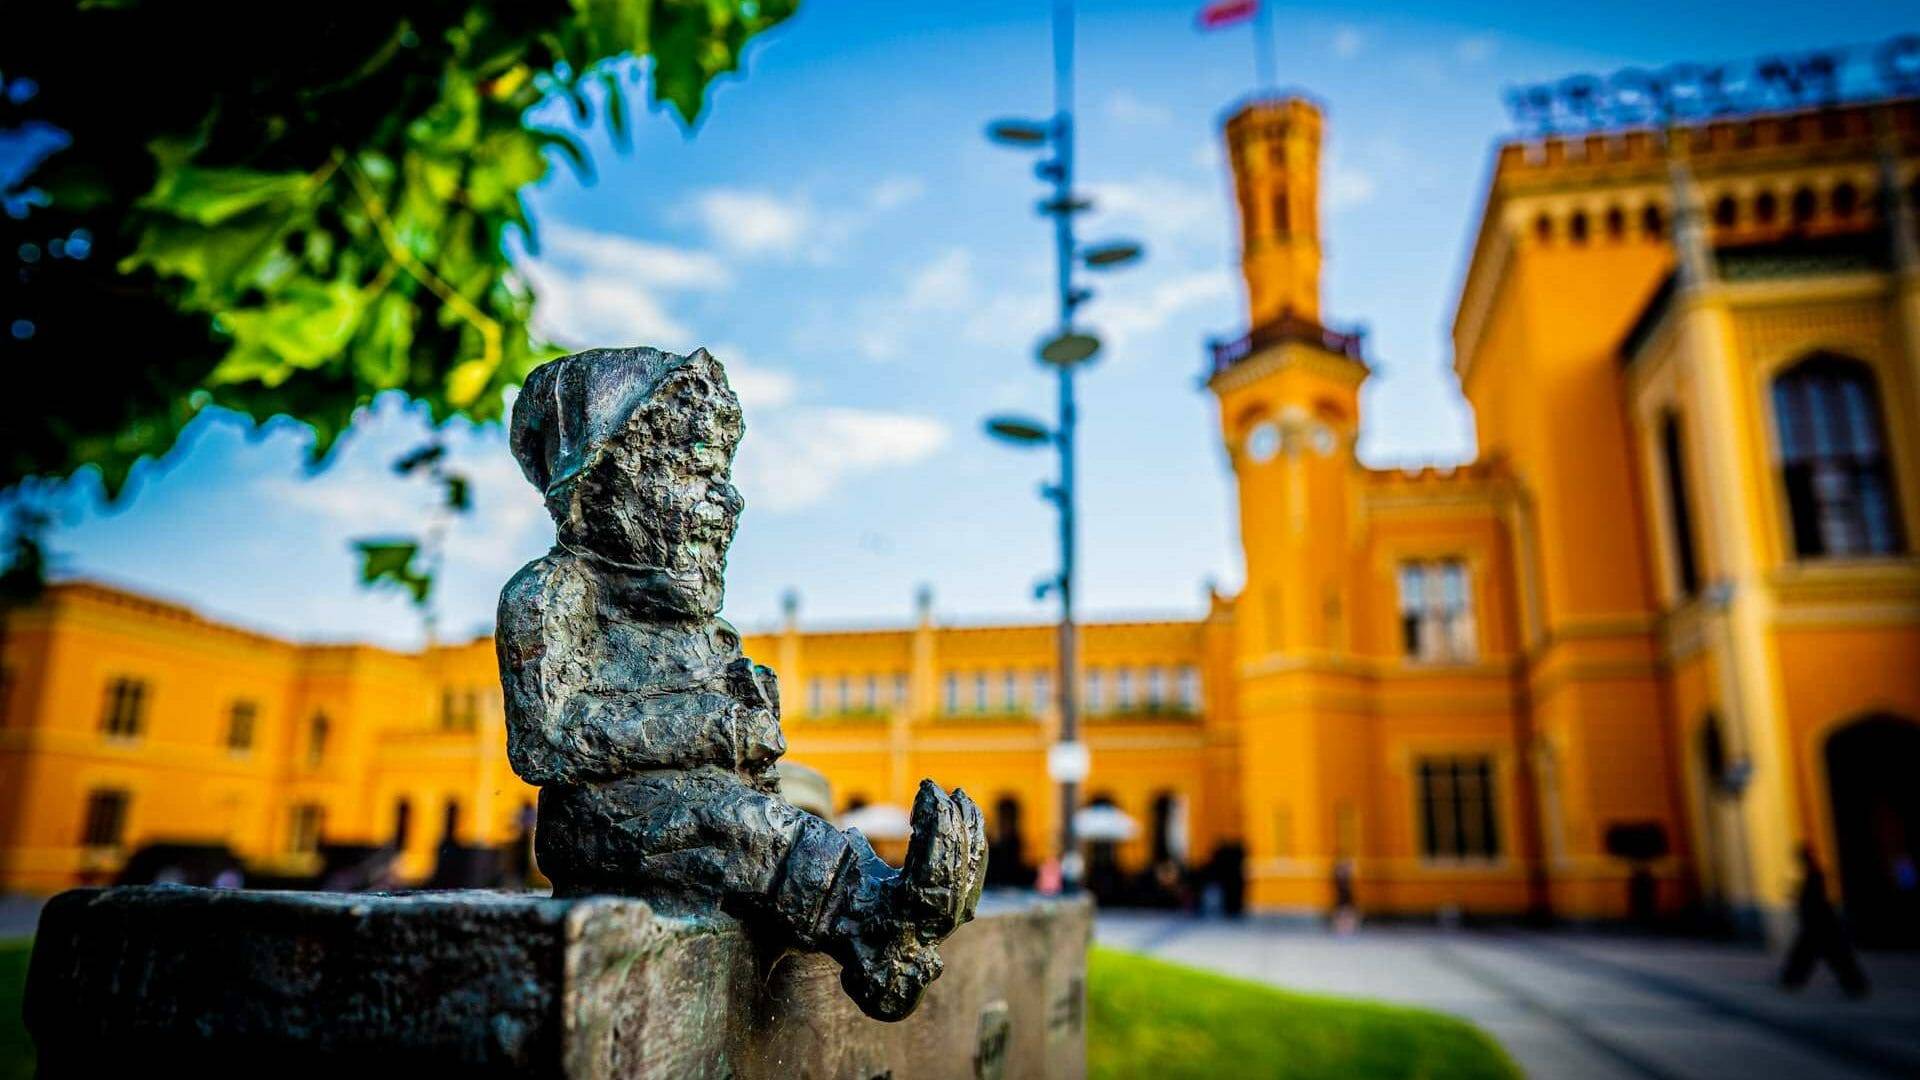 Los duendes de Wroclaw: hay decenas escondidos por toda la ciudad. Foto: visitwroclaw.eu